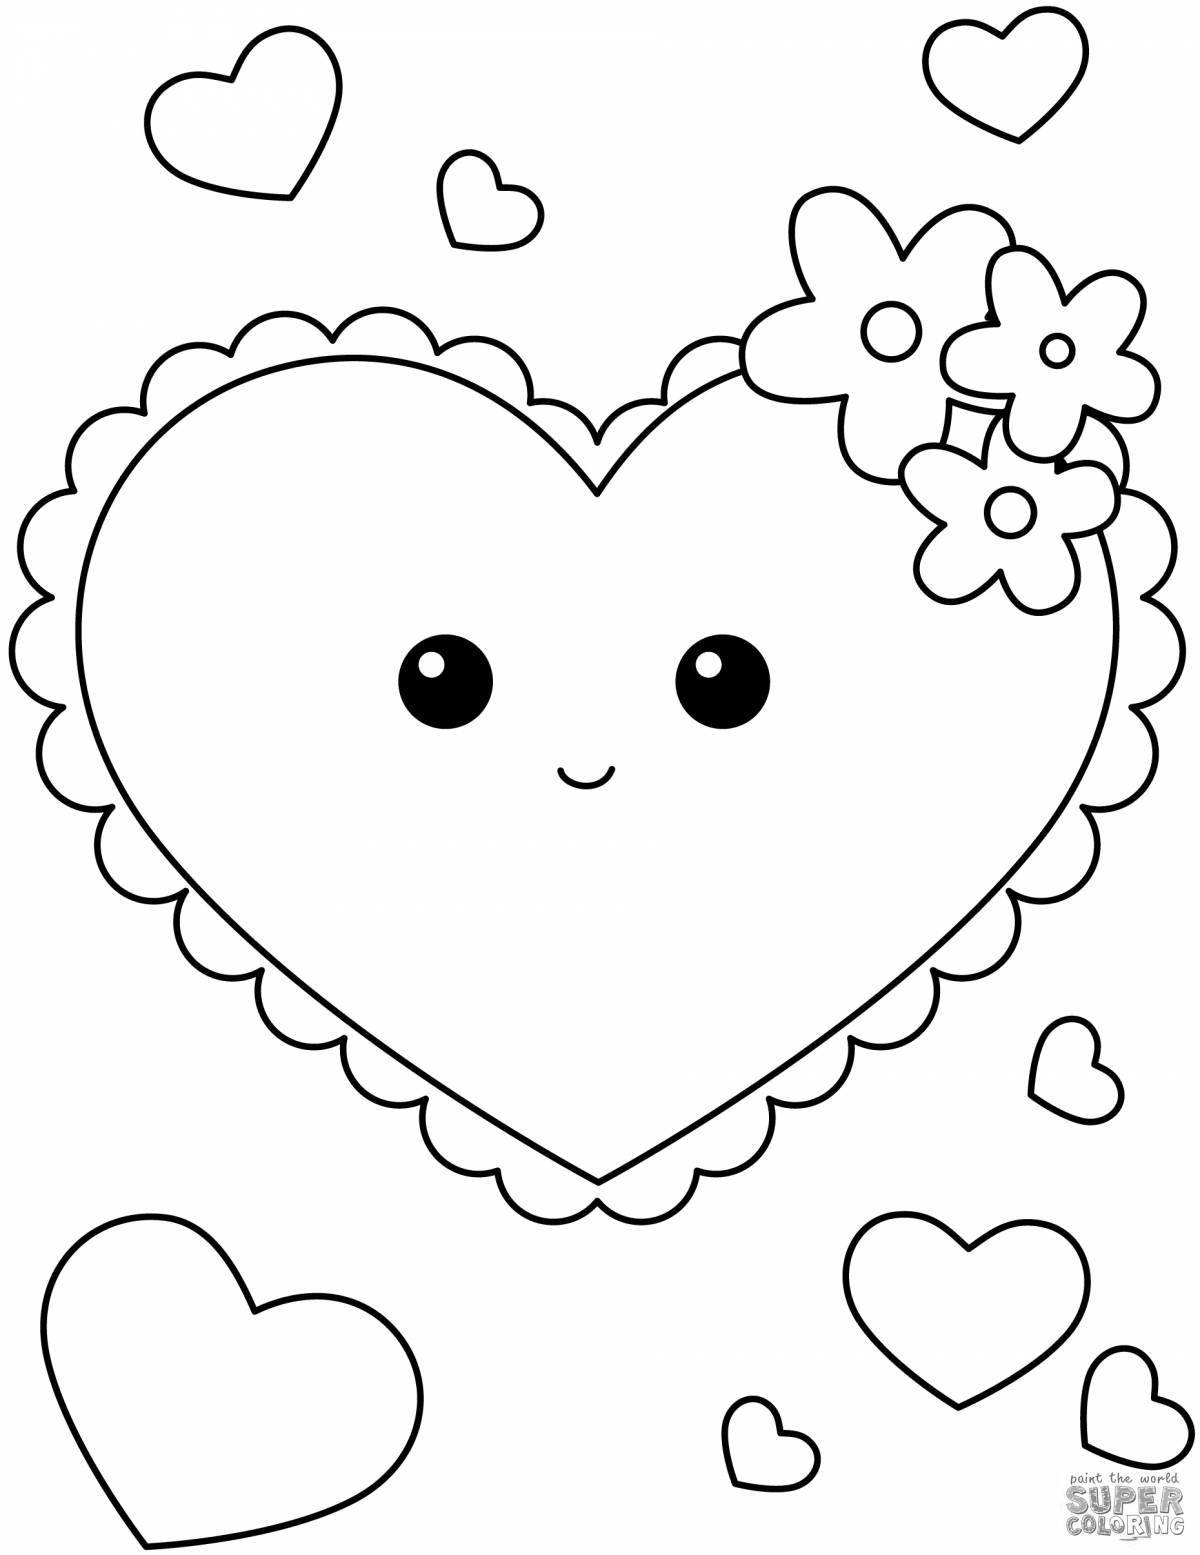 Яркое сердце-раскраска для детей 3-4 лет